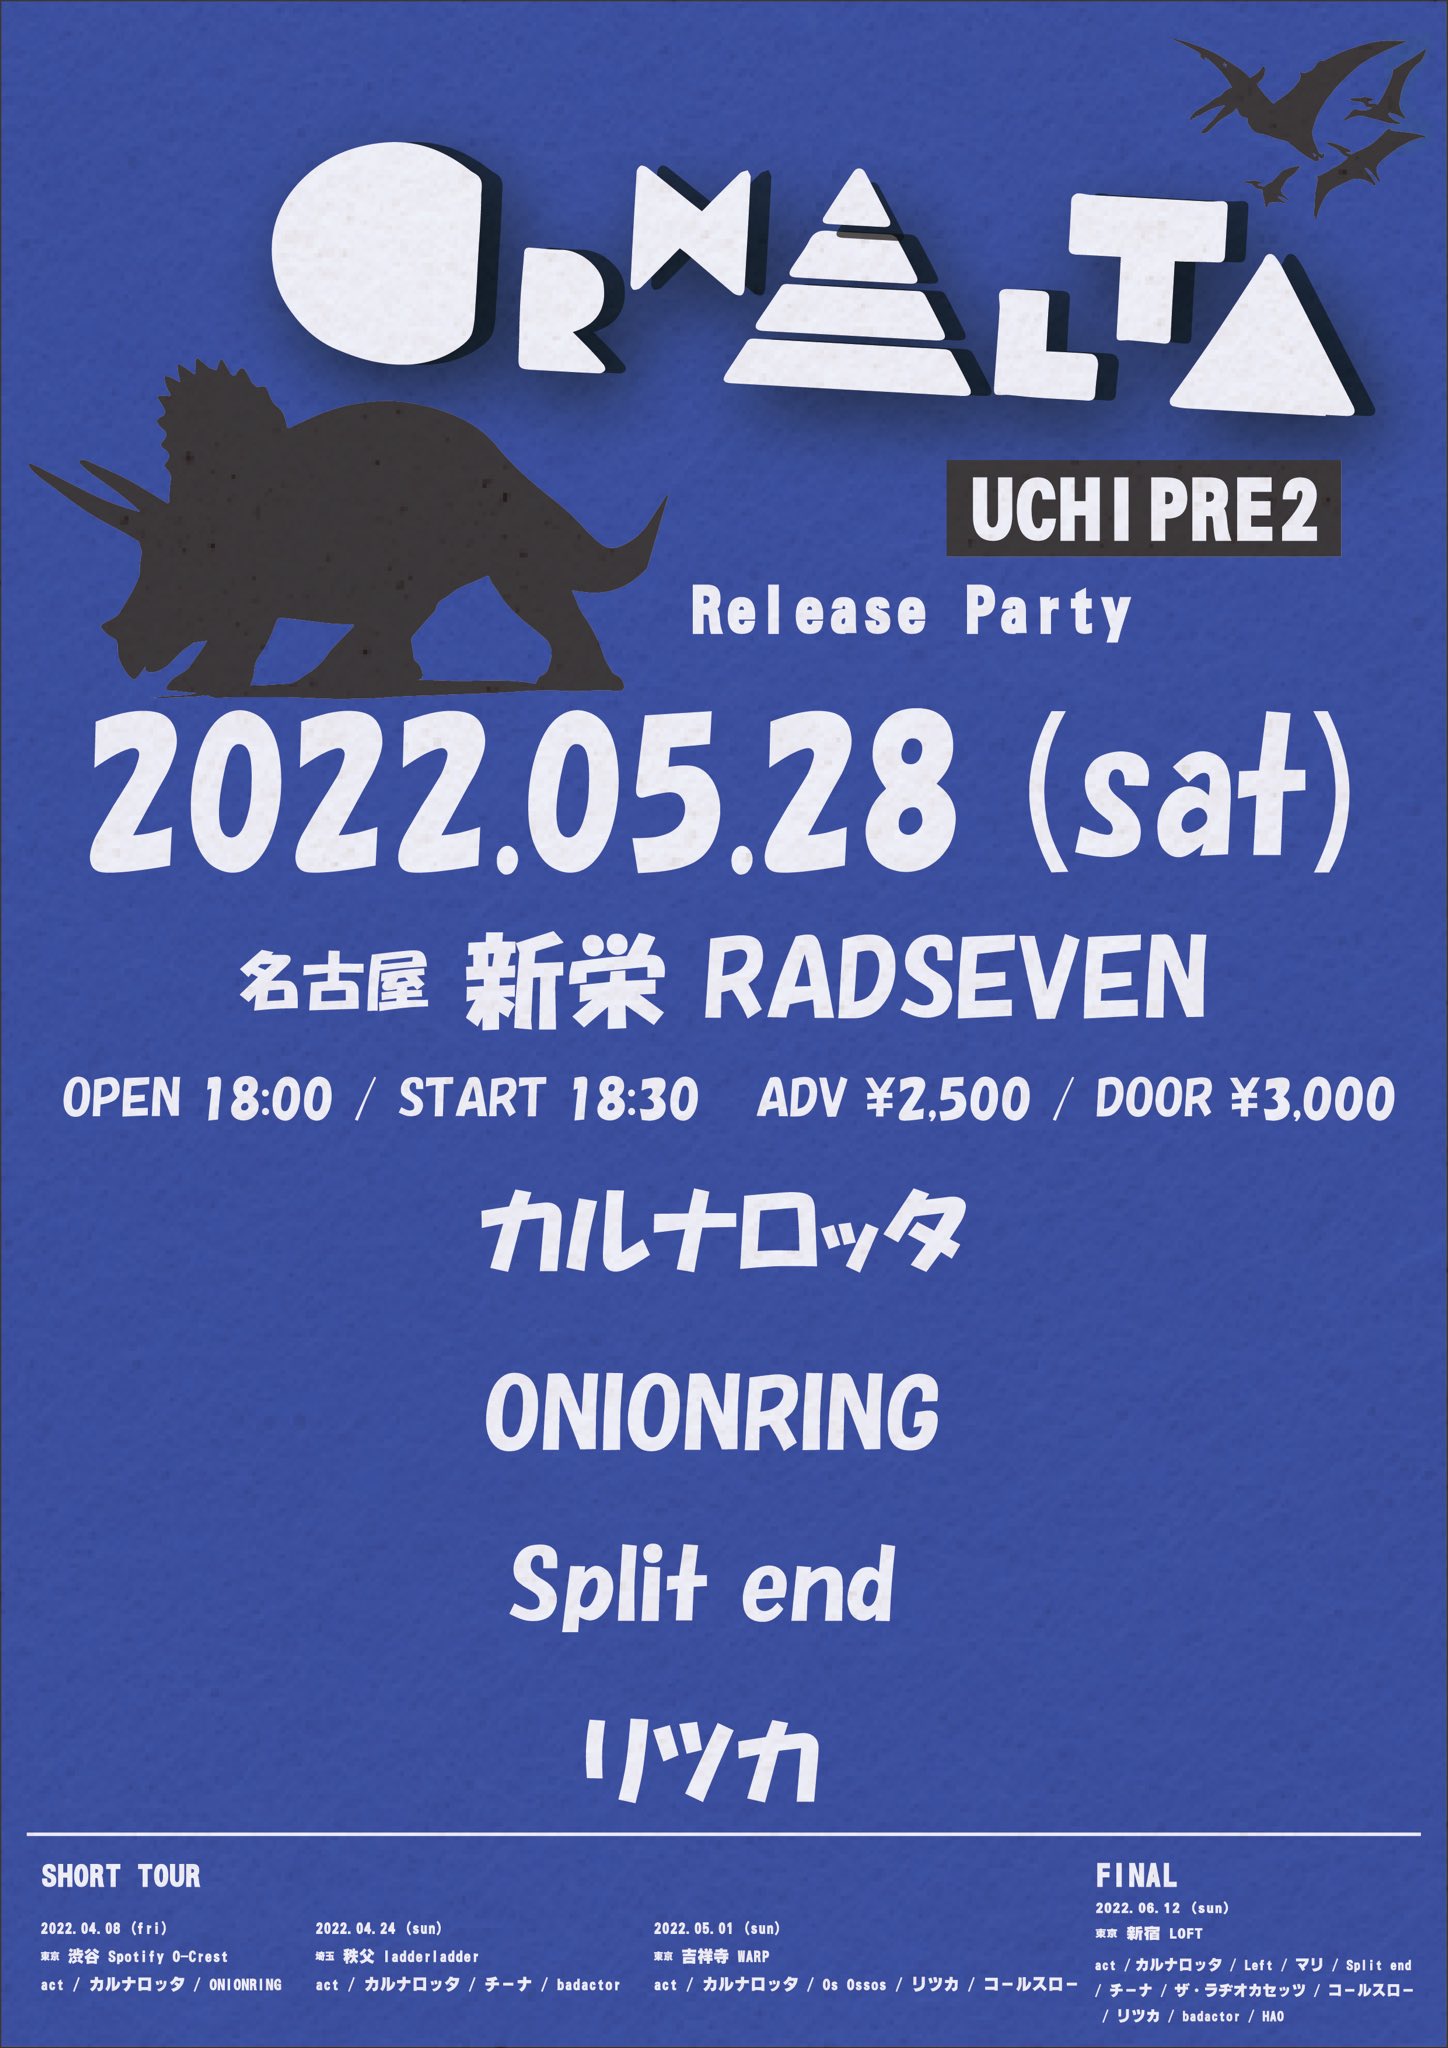 カルナロッタ主催オムニバス 「UCHIPRE 2」release party 名古屋編!!